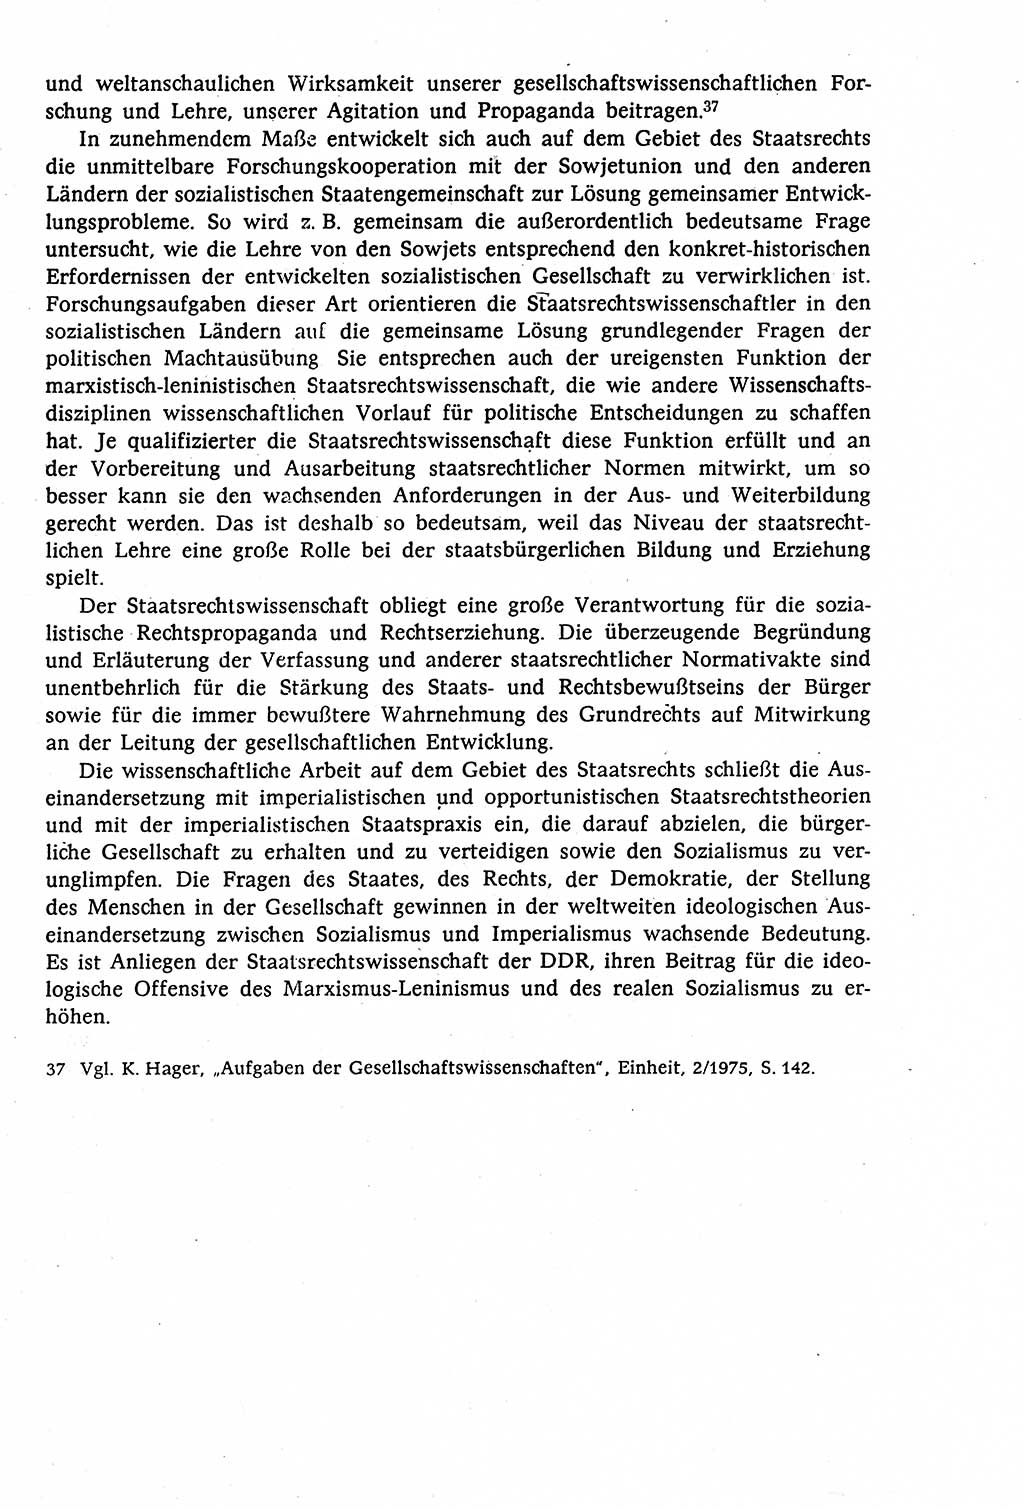 Staatsrecht der DDR (Deutsche Demokratische Republik), Lehrbuch 1977, Seite 45 (St.-R. DDR Lb. 1977, S. 45)